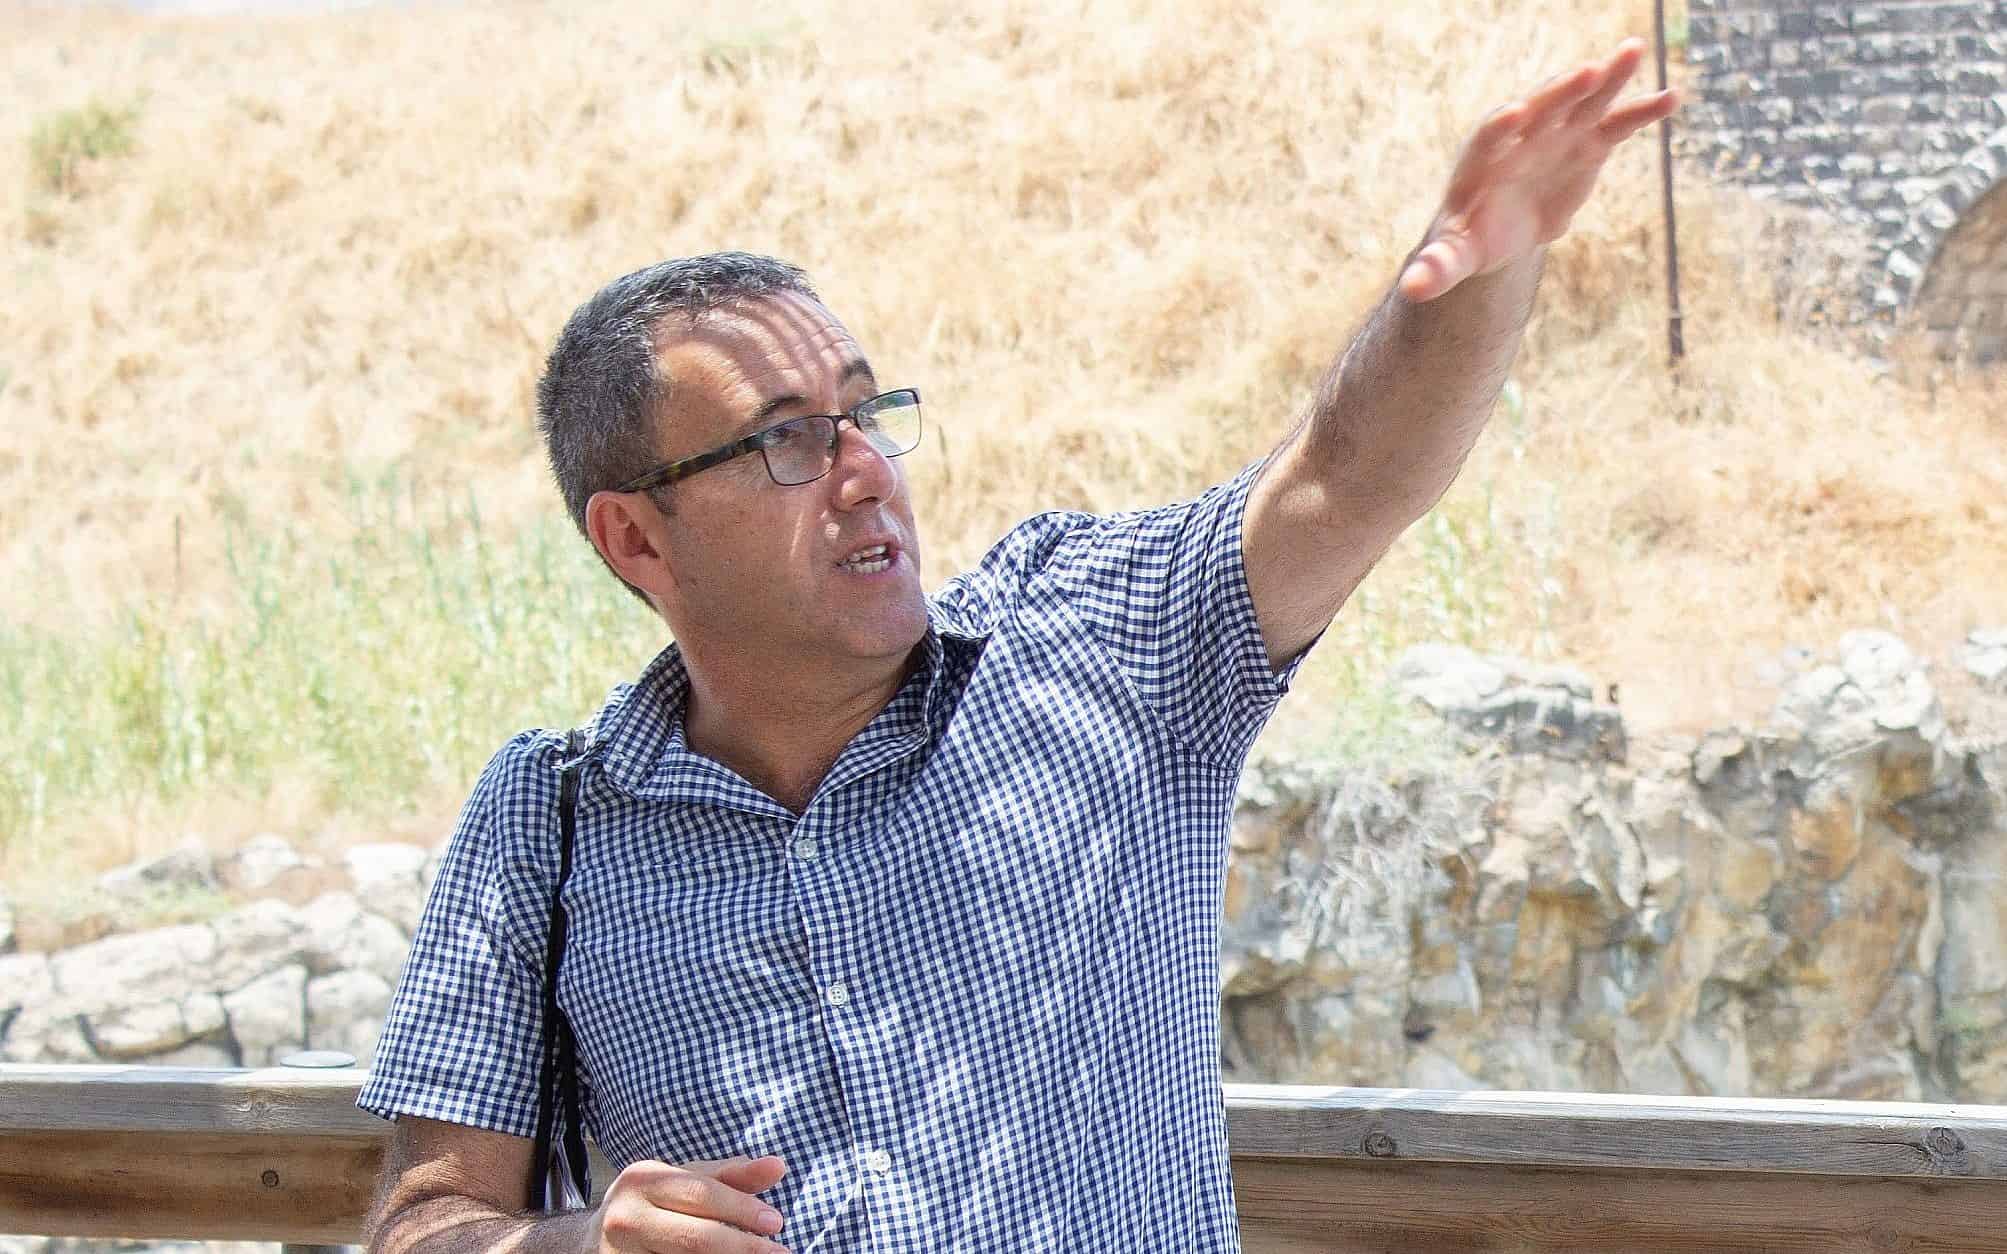 גדעון ברומברג, מנהל הסניף הישראלי של אקופיס המזרח התיכון, מסביר על ענייני מים בנהריים, 12 ביוני 2019 (צילום: צילום באדיבות אקופיס)